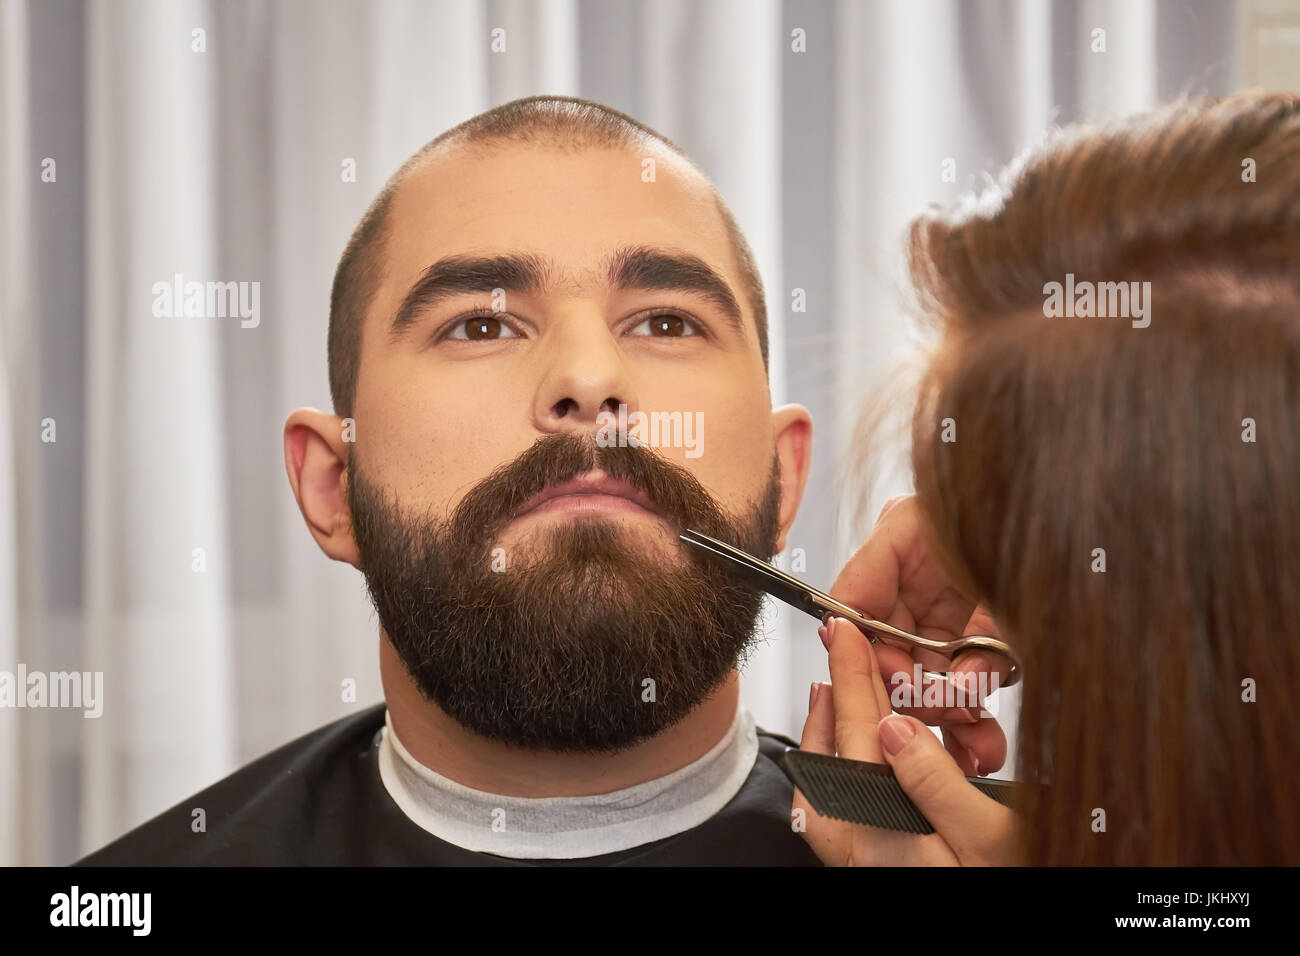 Friseur mit Schere trimmen Bart Stockfotografie - Alamy